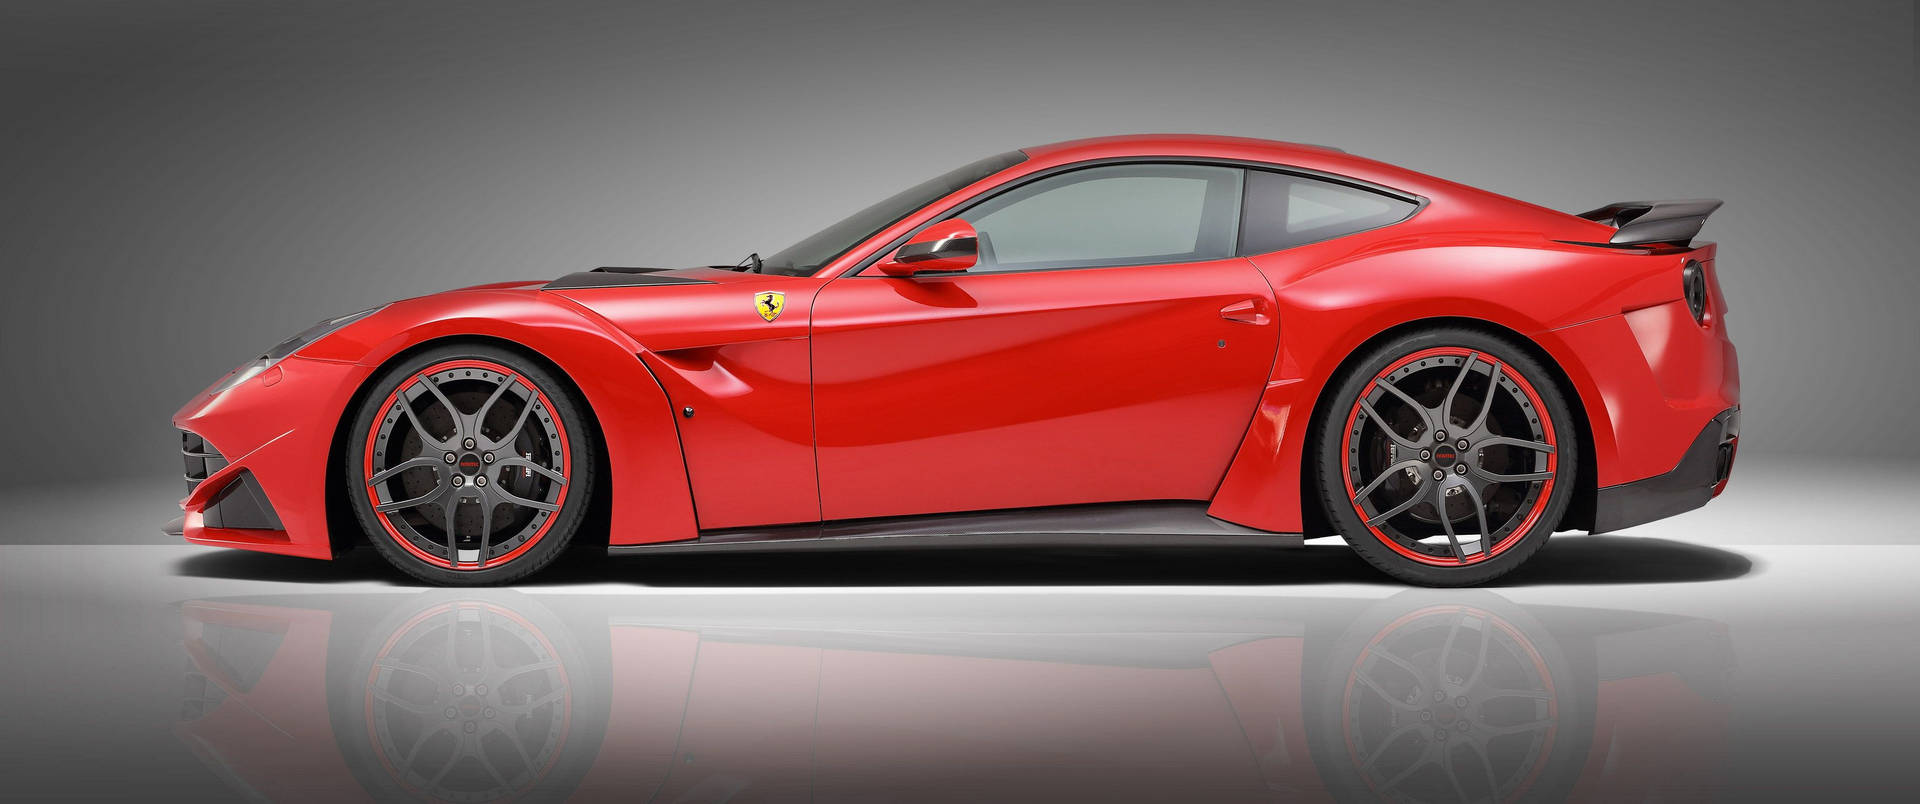 3440x1440 Car Ferrari F12